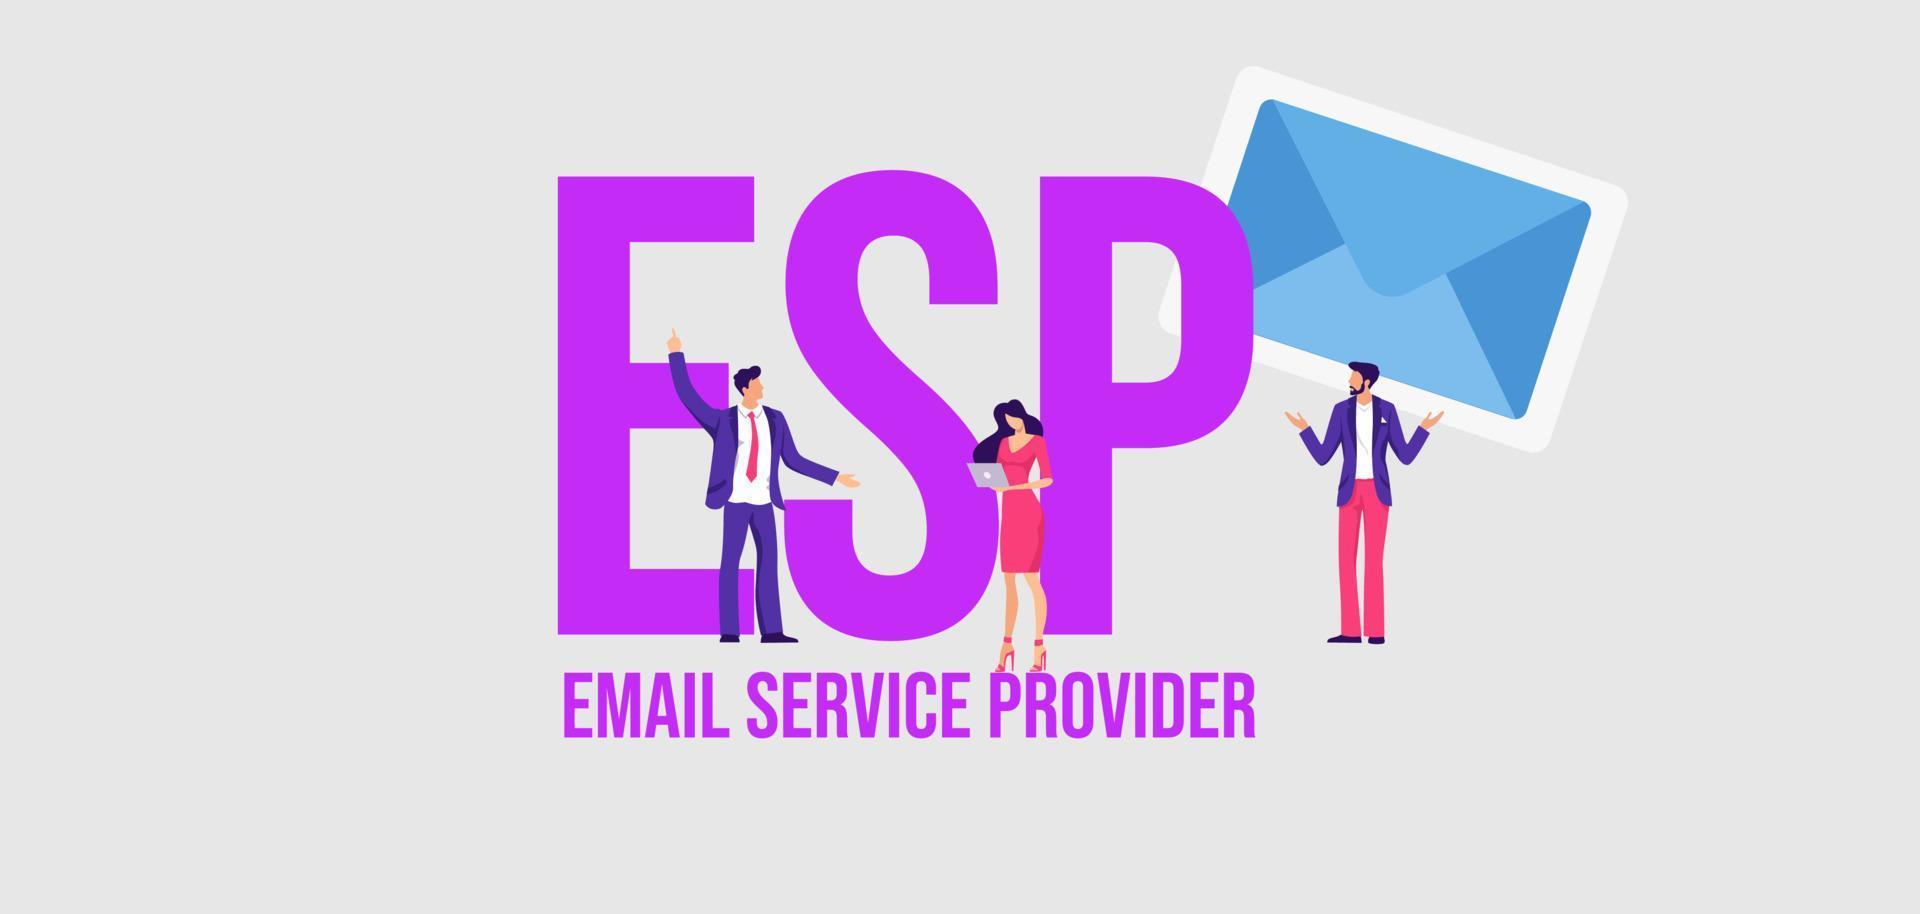 esp e-mail servizio fornitore. comunicazione sociale media marketing tecnologie informativo in linea. vettore